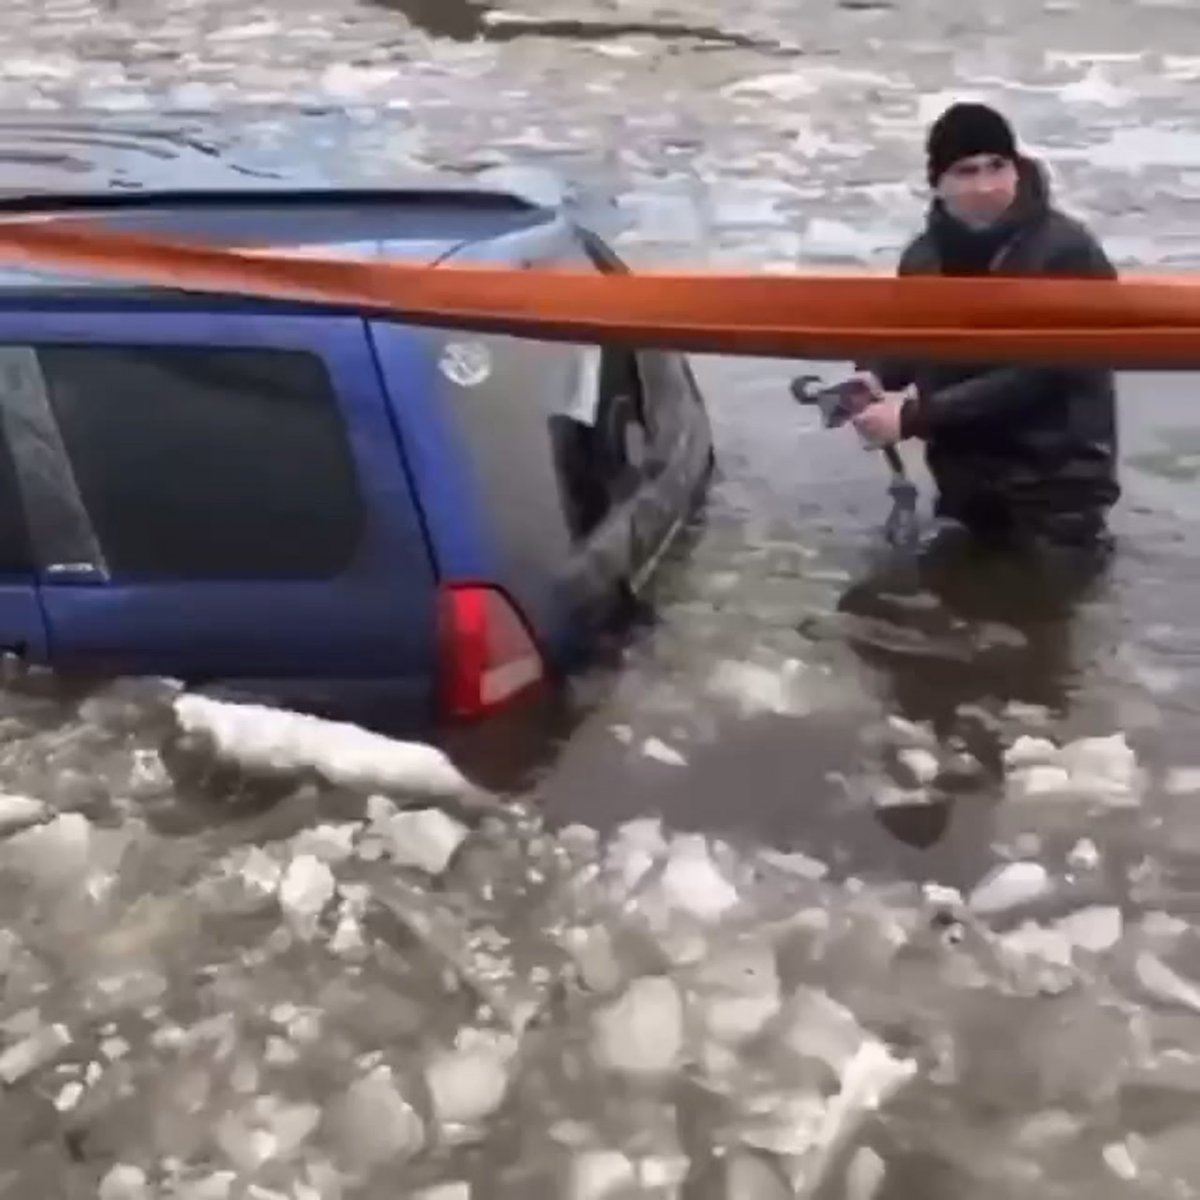 Автомобиль на льду